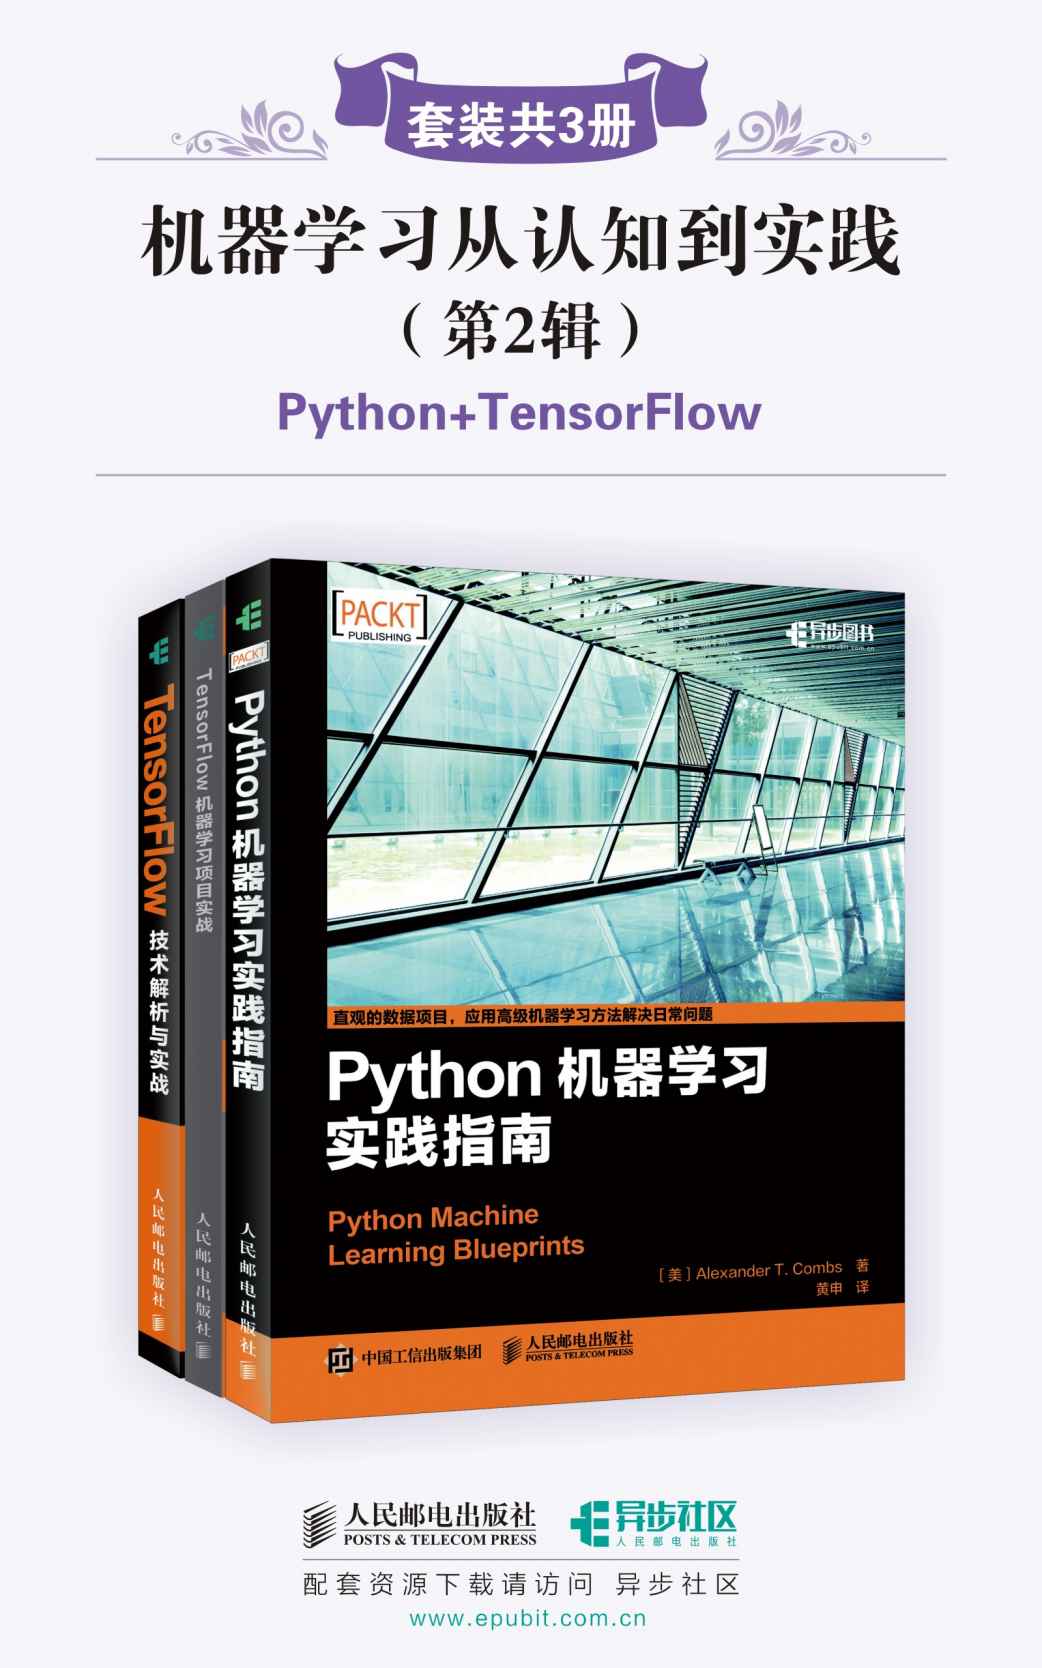 机器学习从认知到实践(第2辑)(套装共3册,Python+TensorFlow)